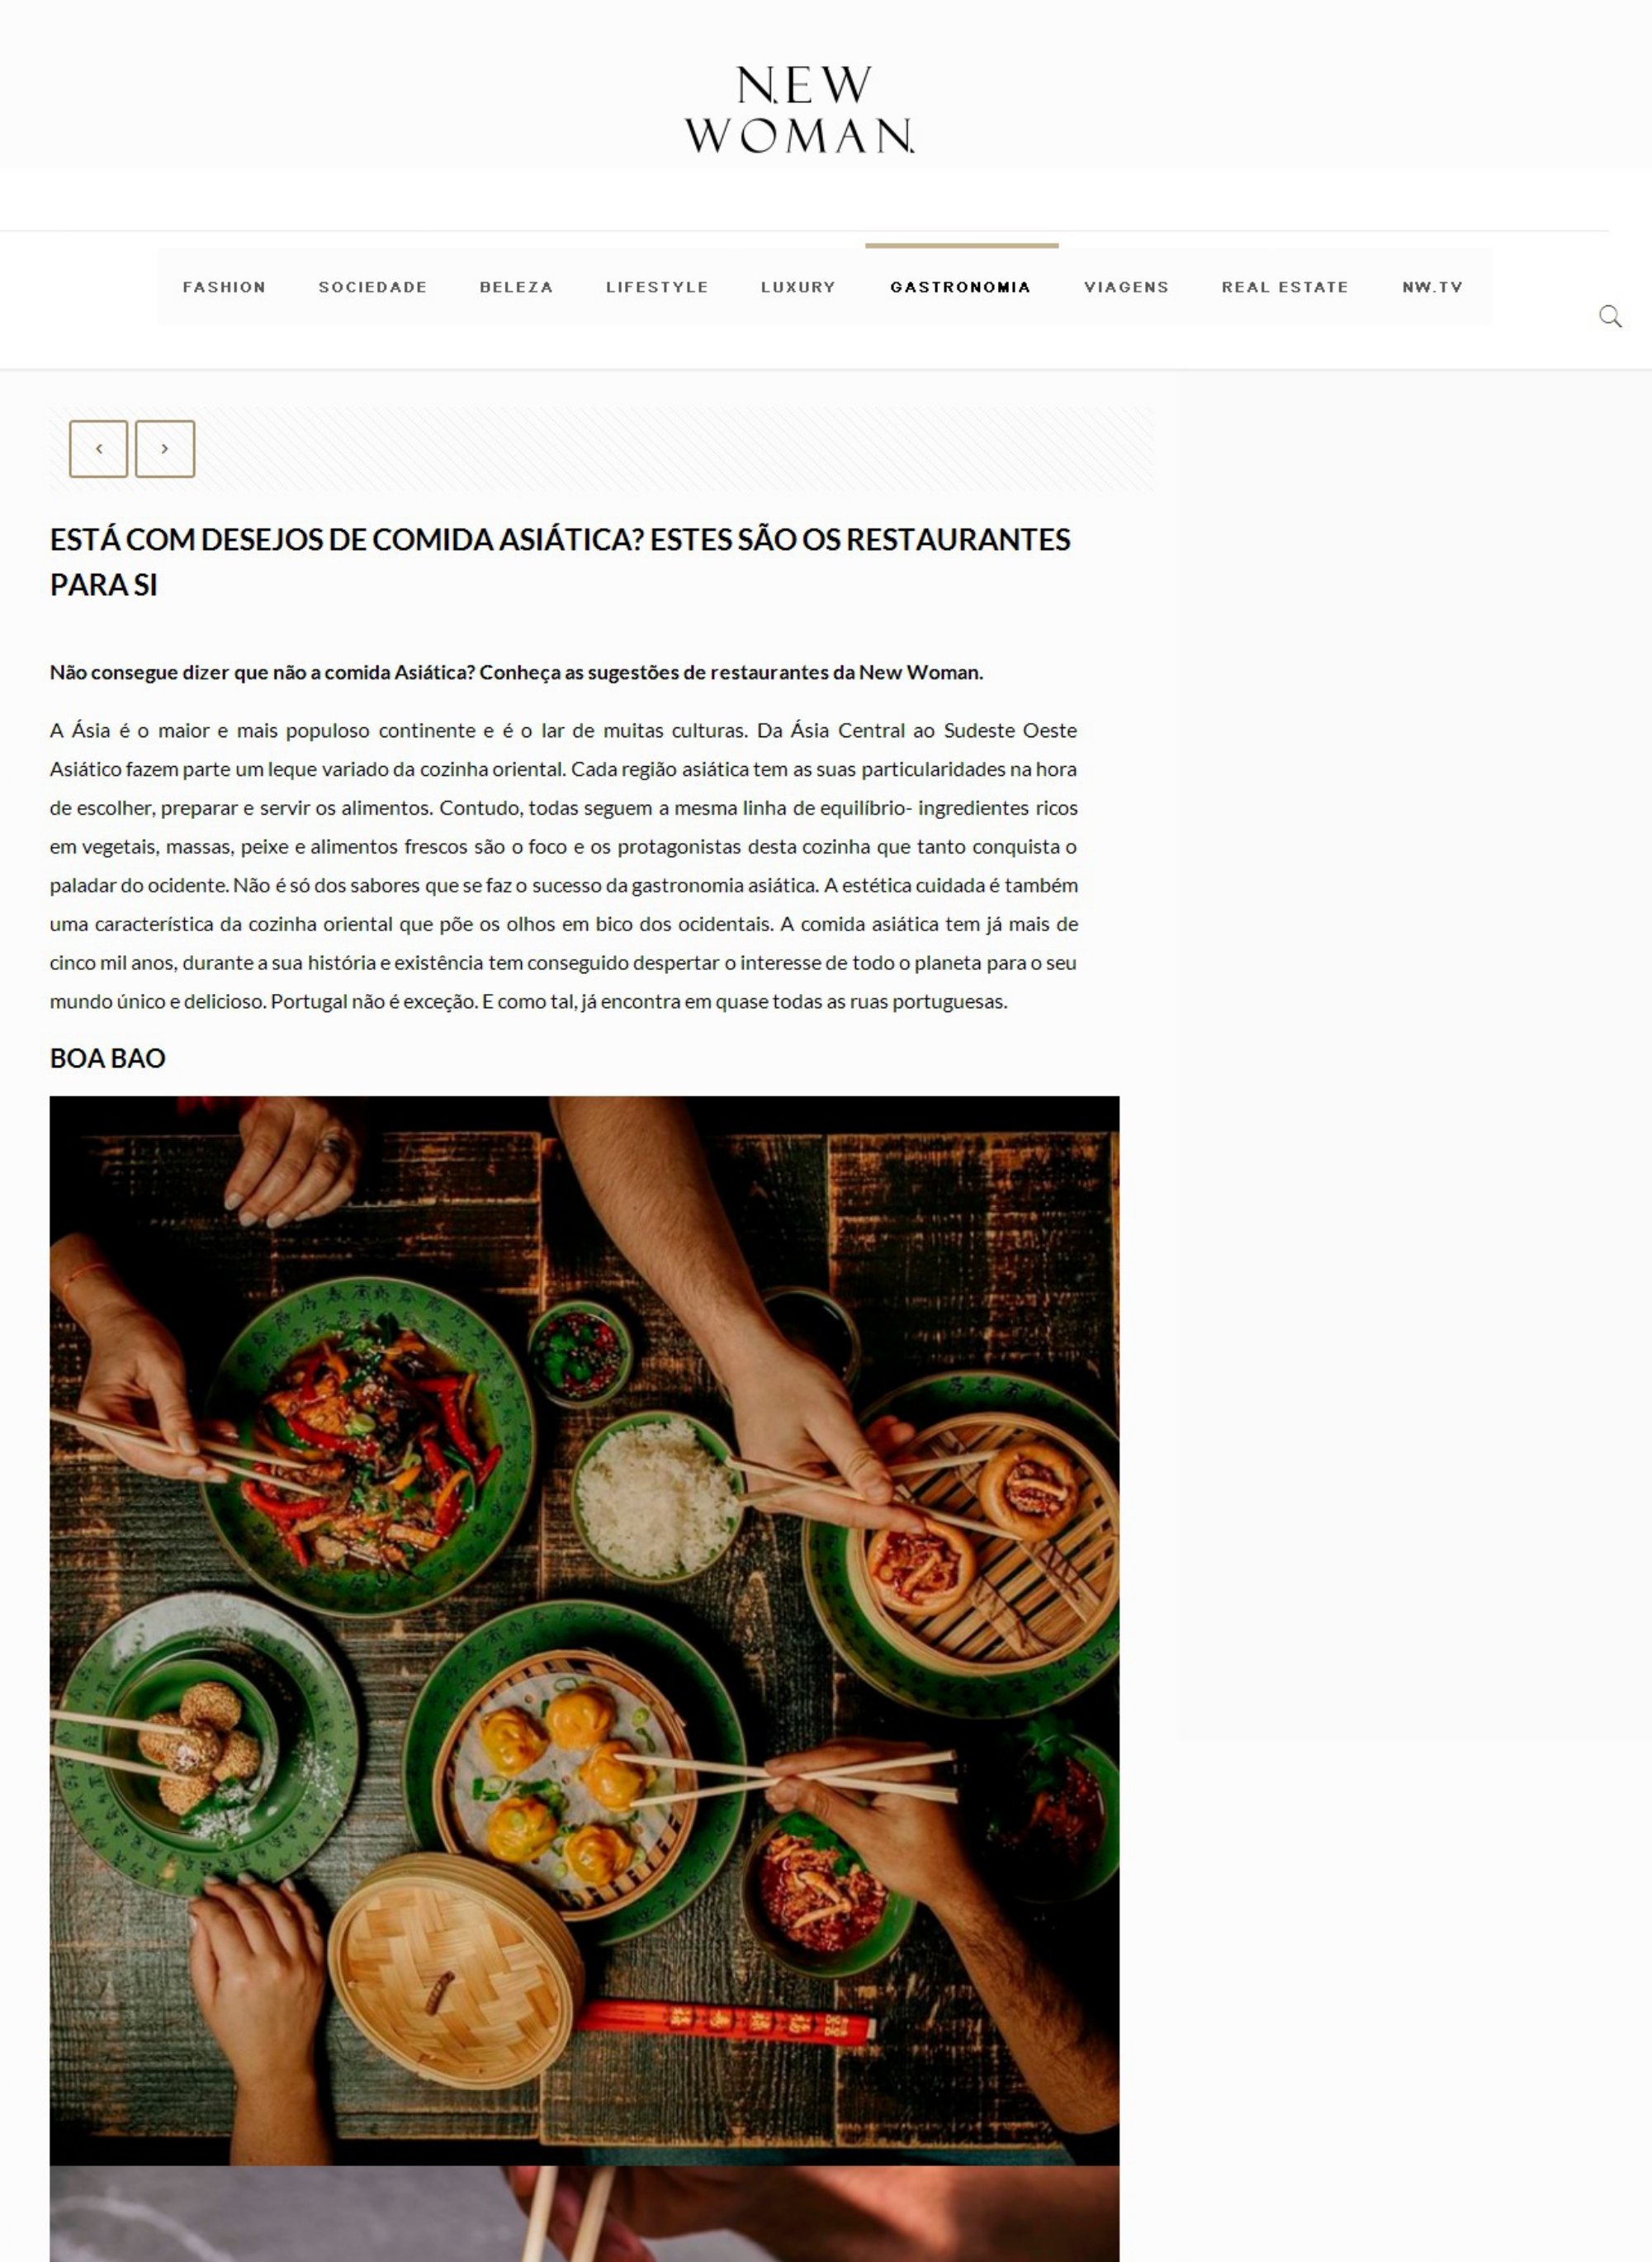 NewWoman Online_Está com desejos de comida asiática? Estes são os restaurantes para si_page-0001.jpg